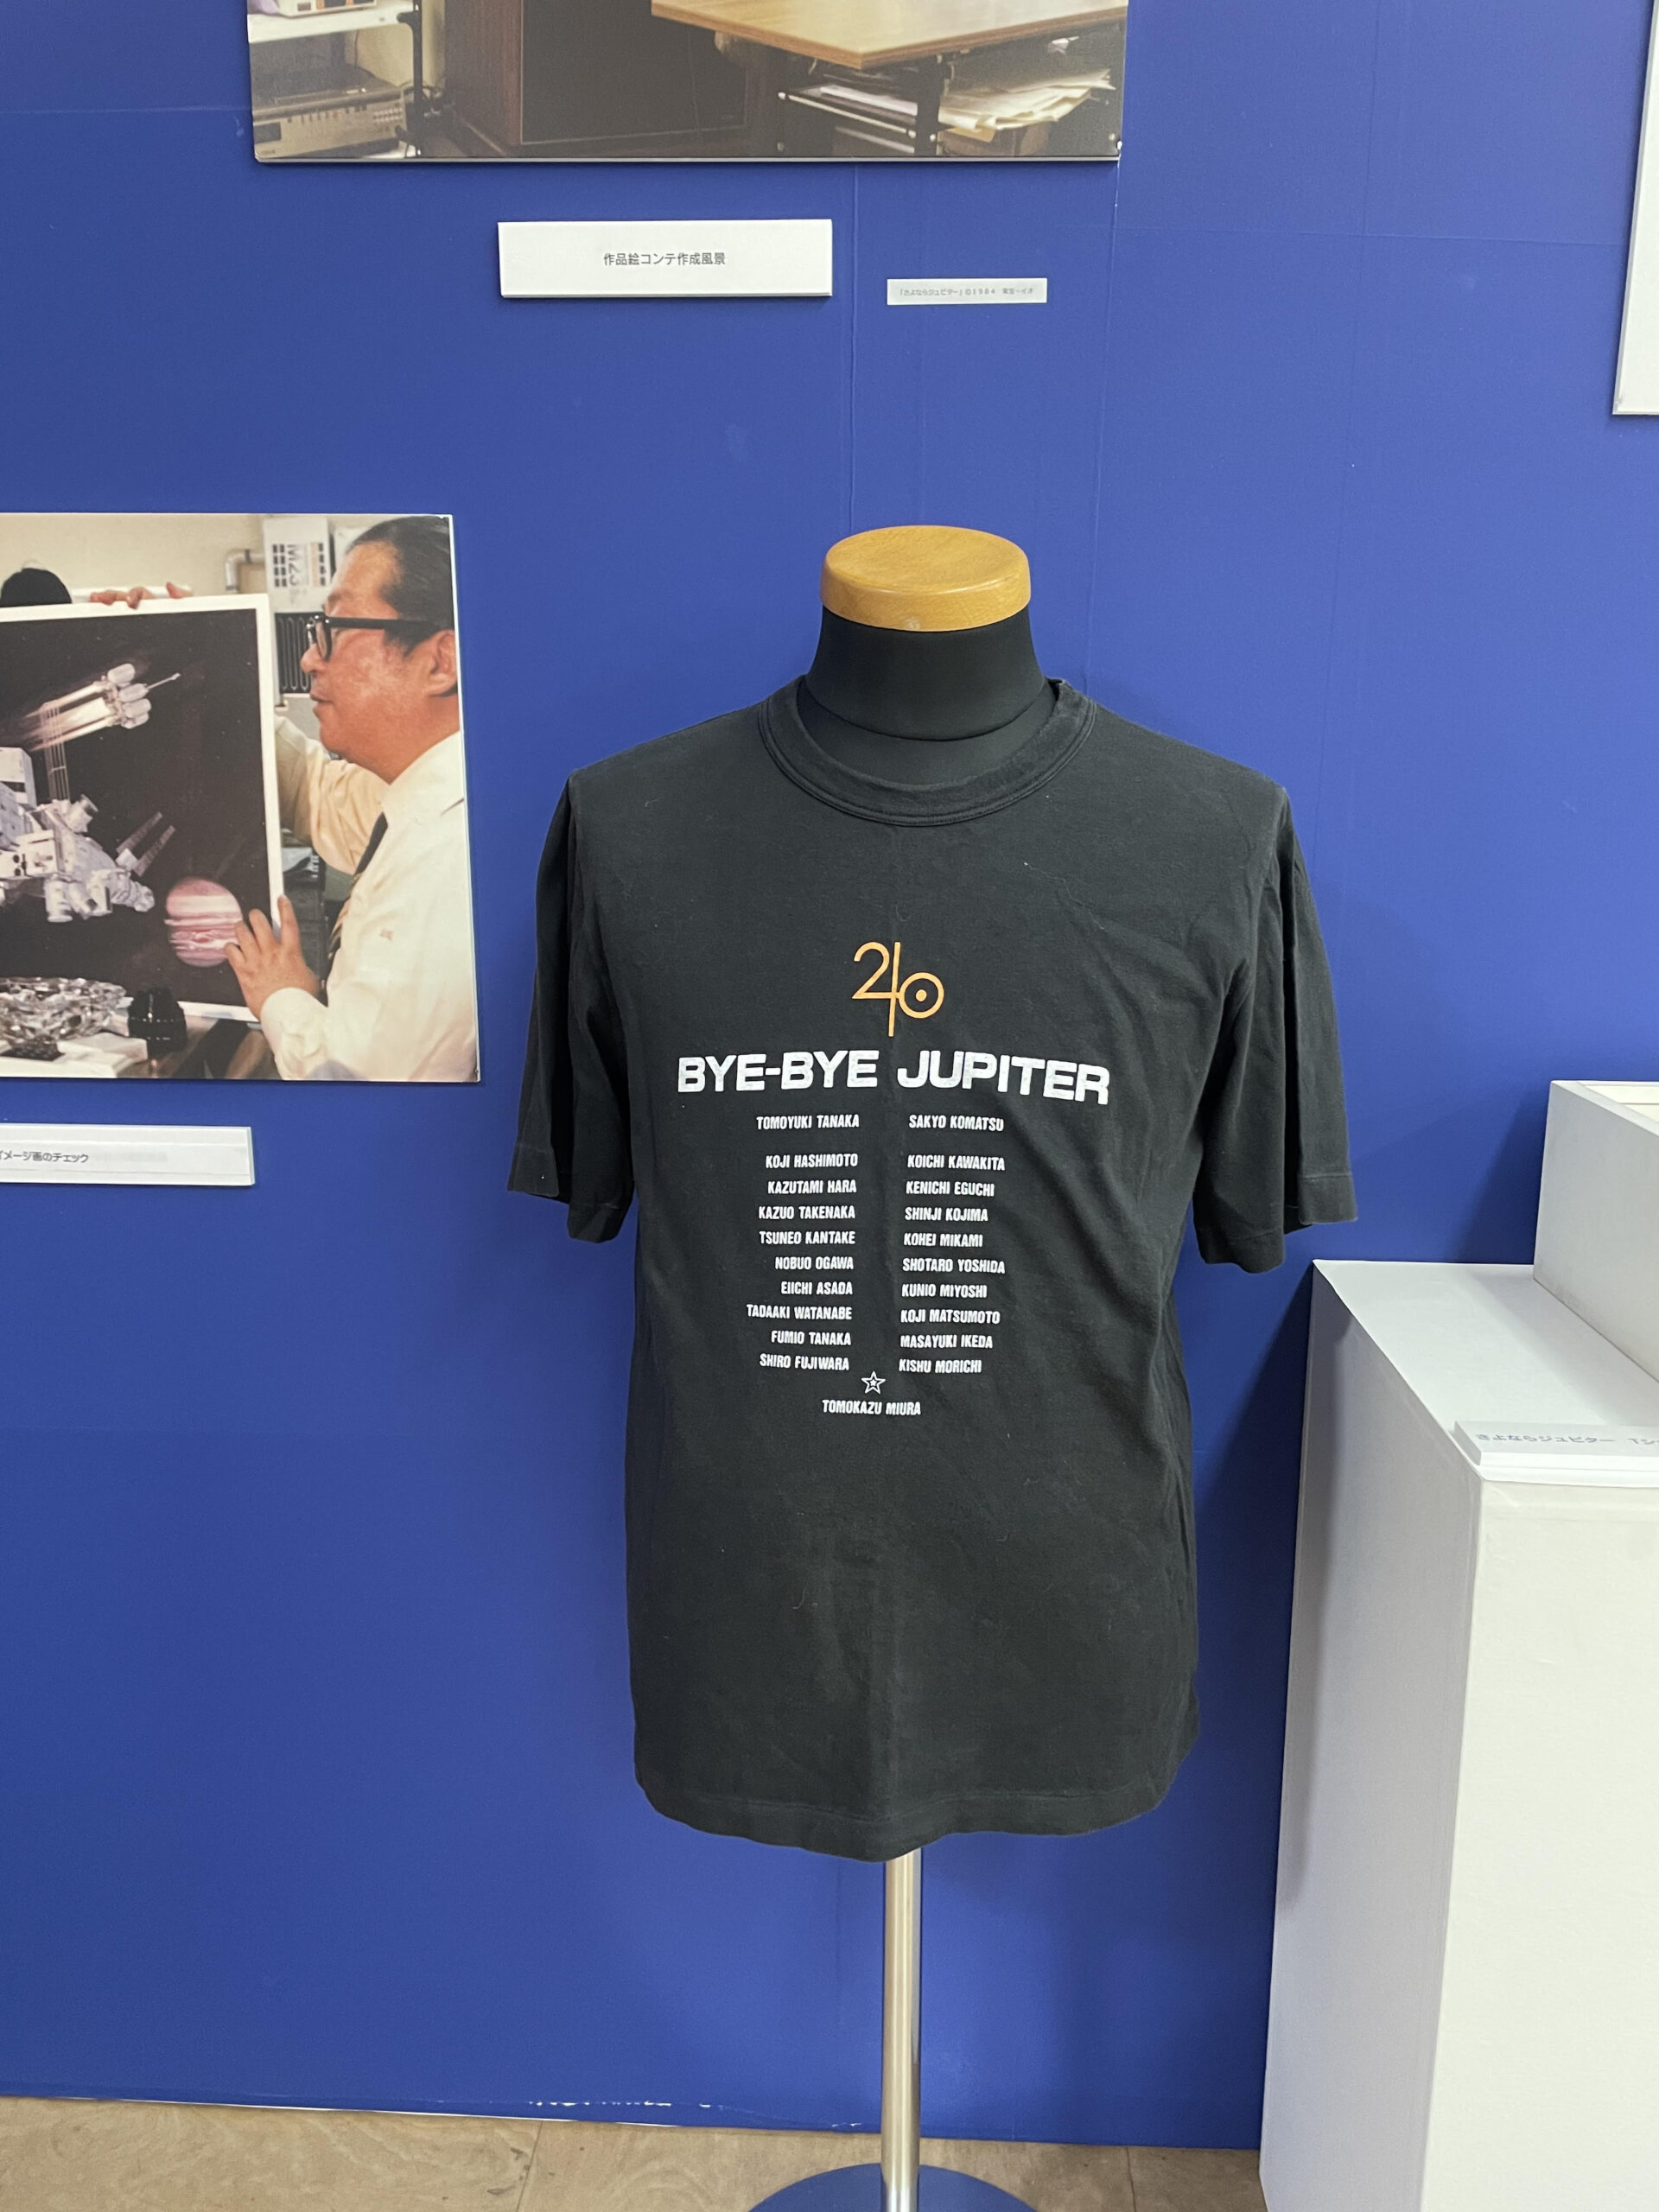 三浦友和さんがスタッフ送った「さよならジュピター」のTシャツ